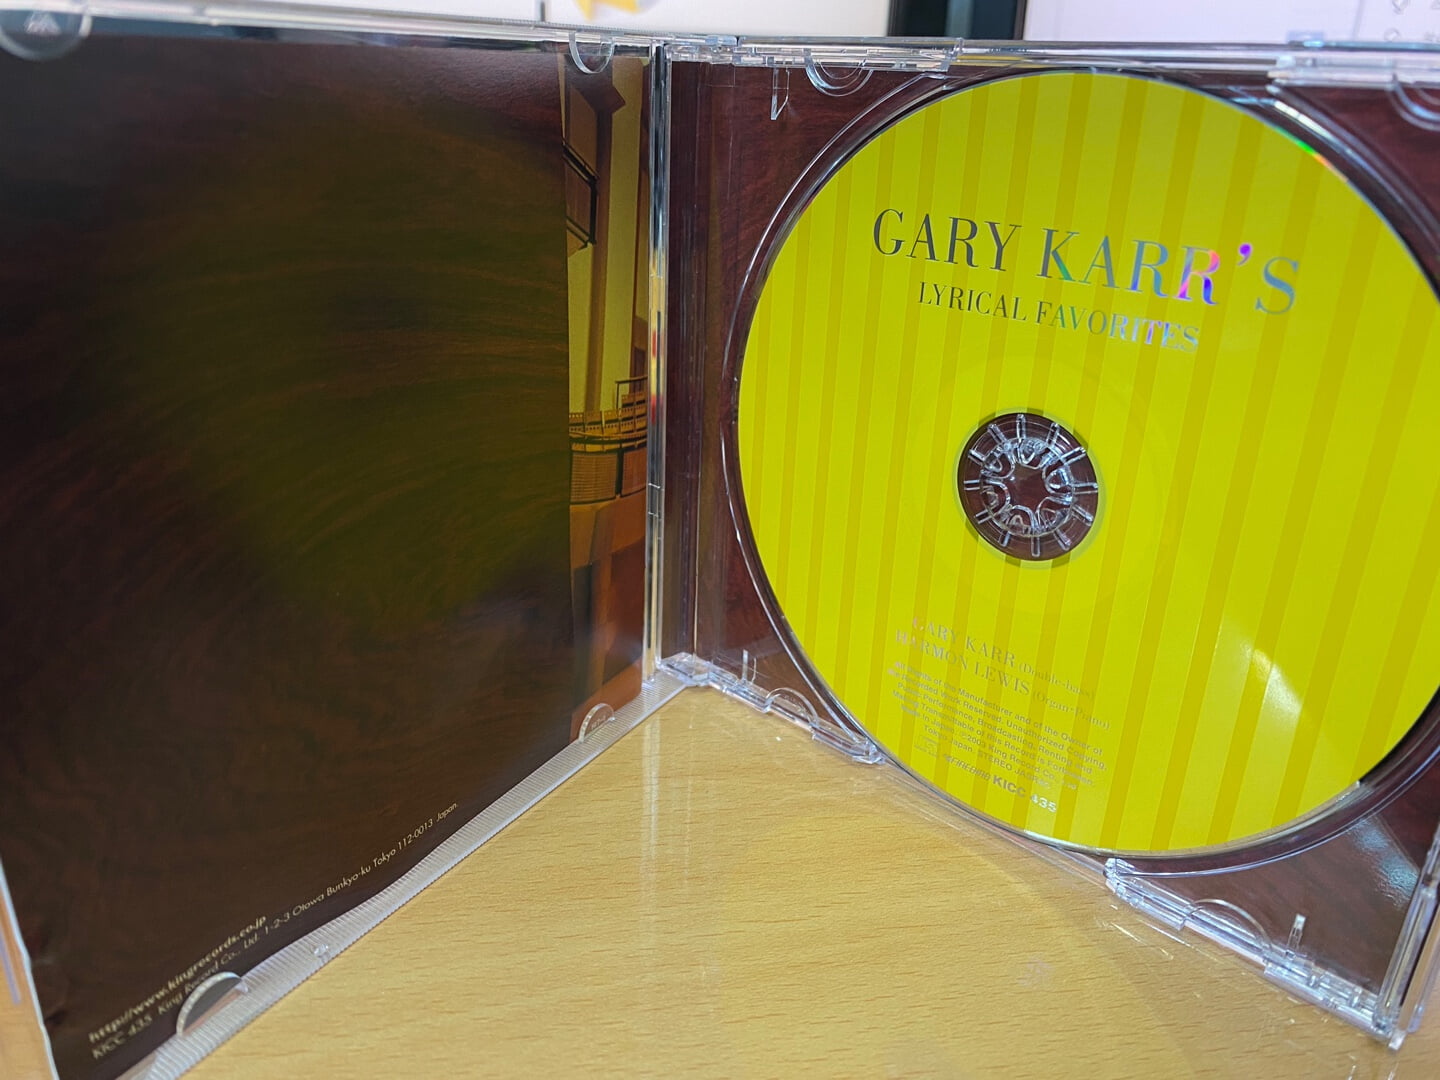 게리 카,하몬 루이스 - Gary Karr,Harmon Lewis - Gary Karr's Lyrical Favorites [일본발매]